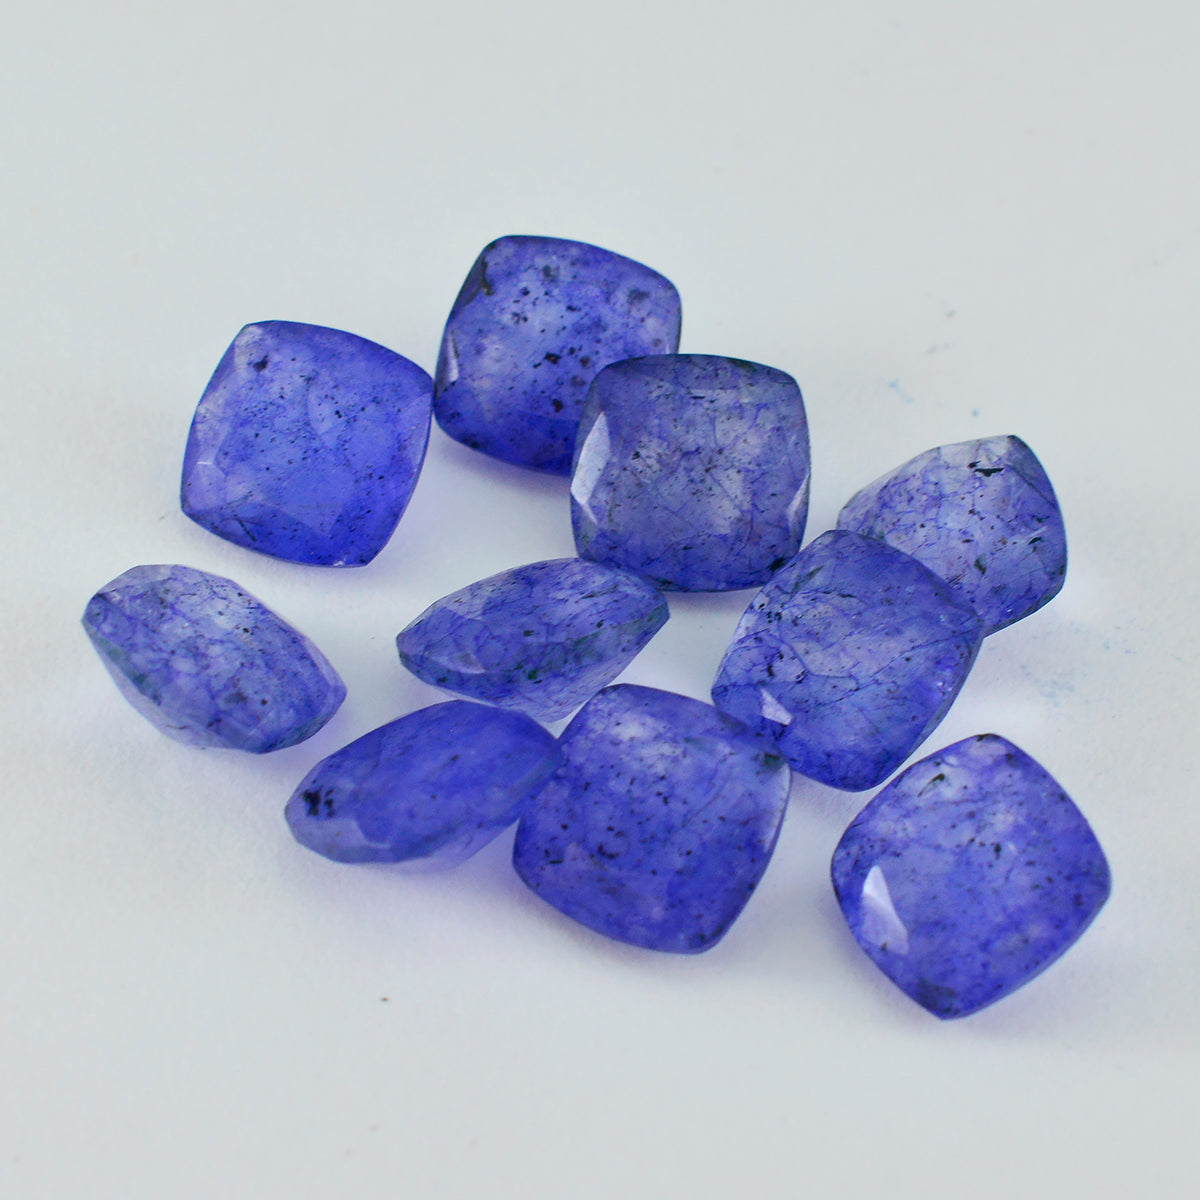 Riyogems 1 Stück natürlicher blauer Jaspis, facettiert, 4 x 4 mm, Kissenform, Edelsteine von erstaunlicher Qualität